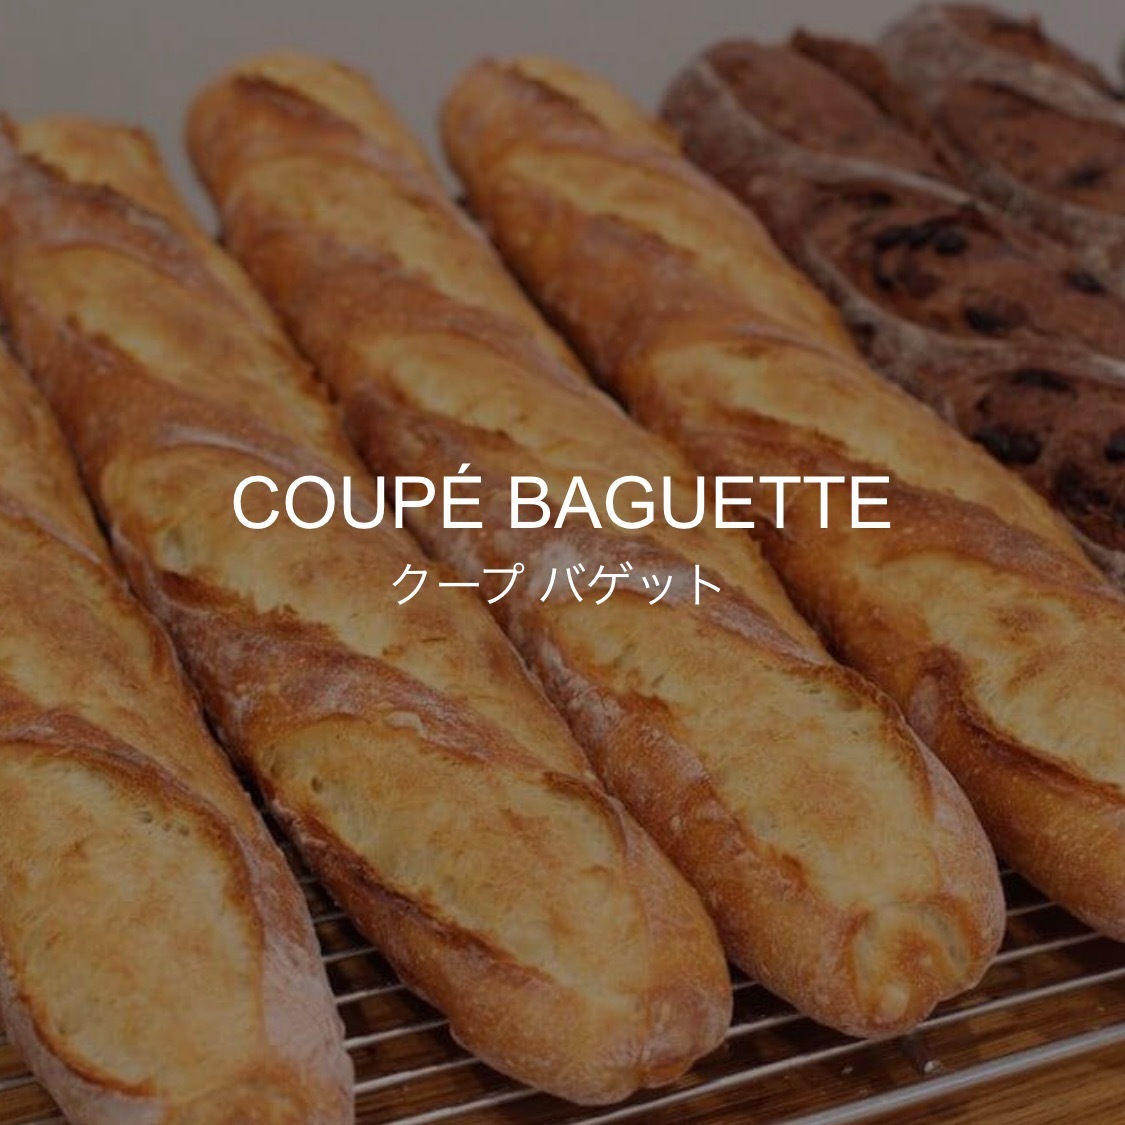 Coupé Baguette online